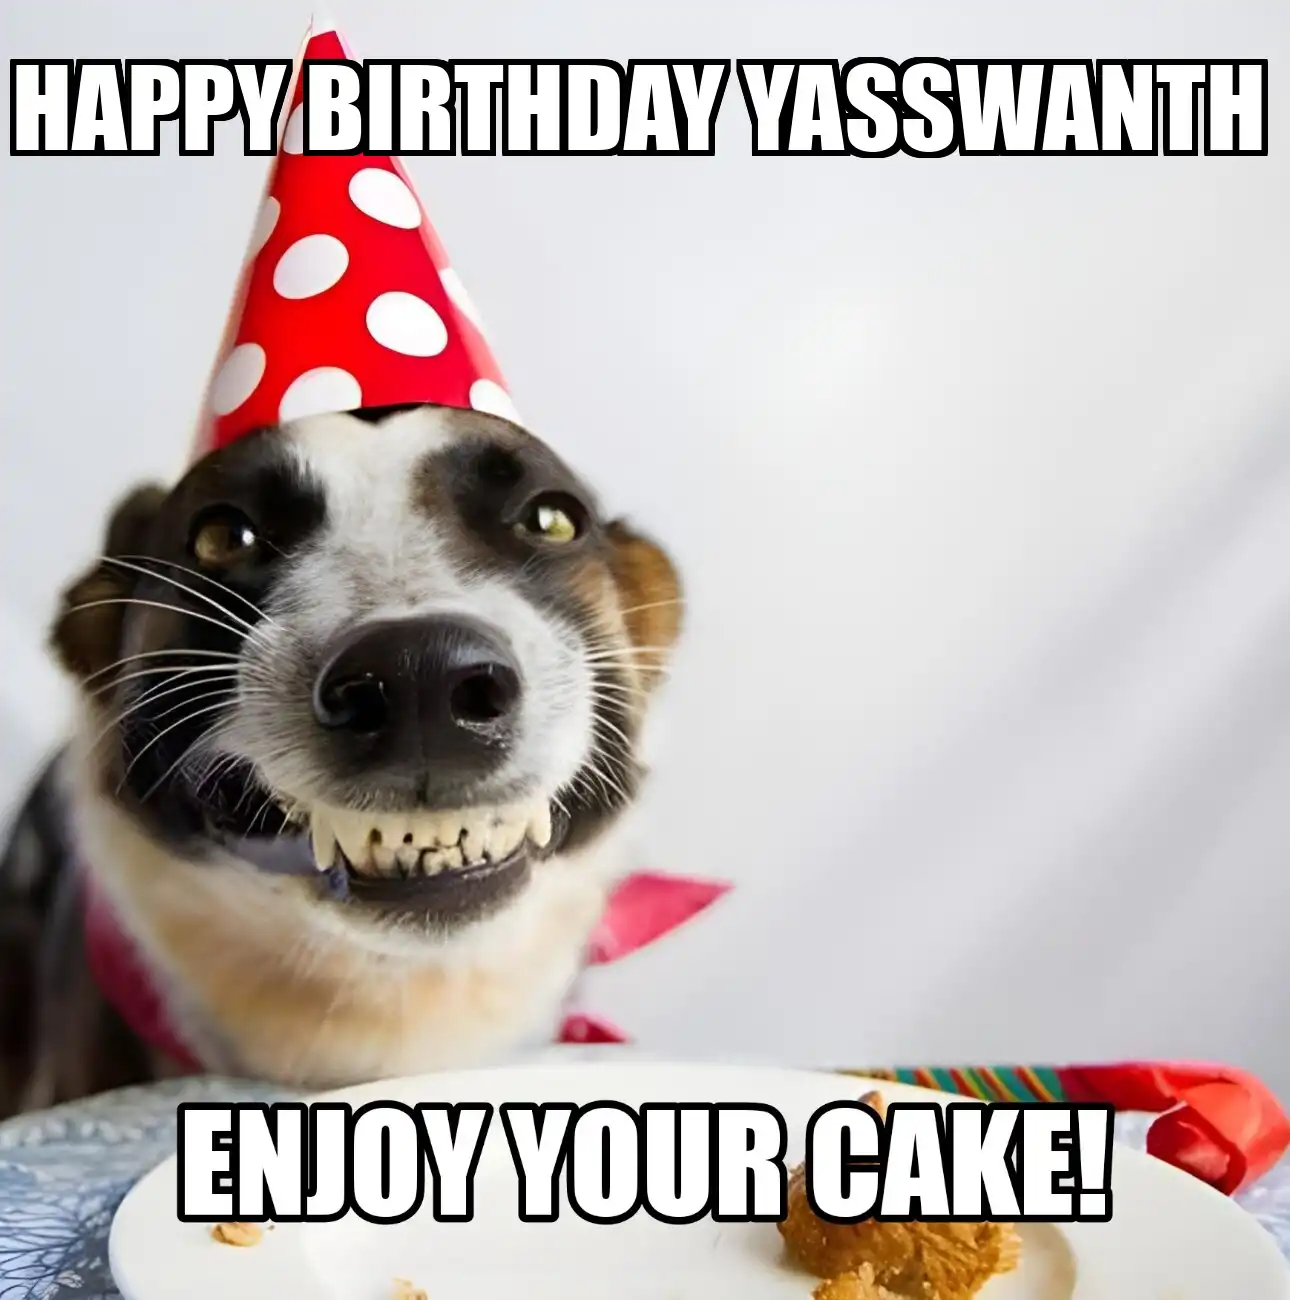 Happy Birthday Yasswanth Enjoy Your Cake Dog Meme